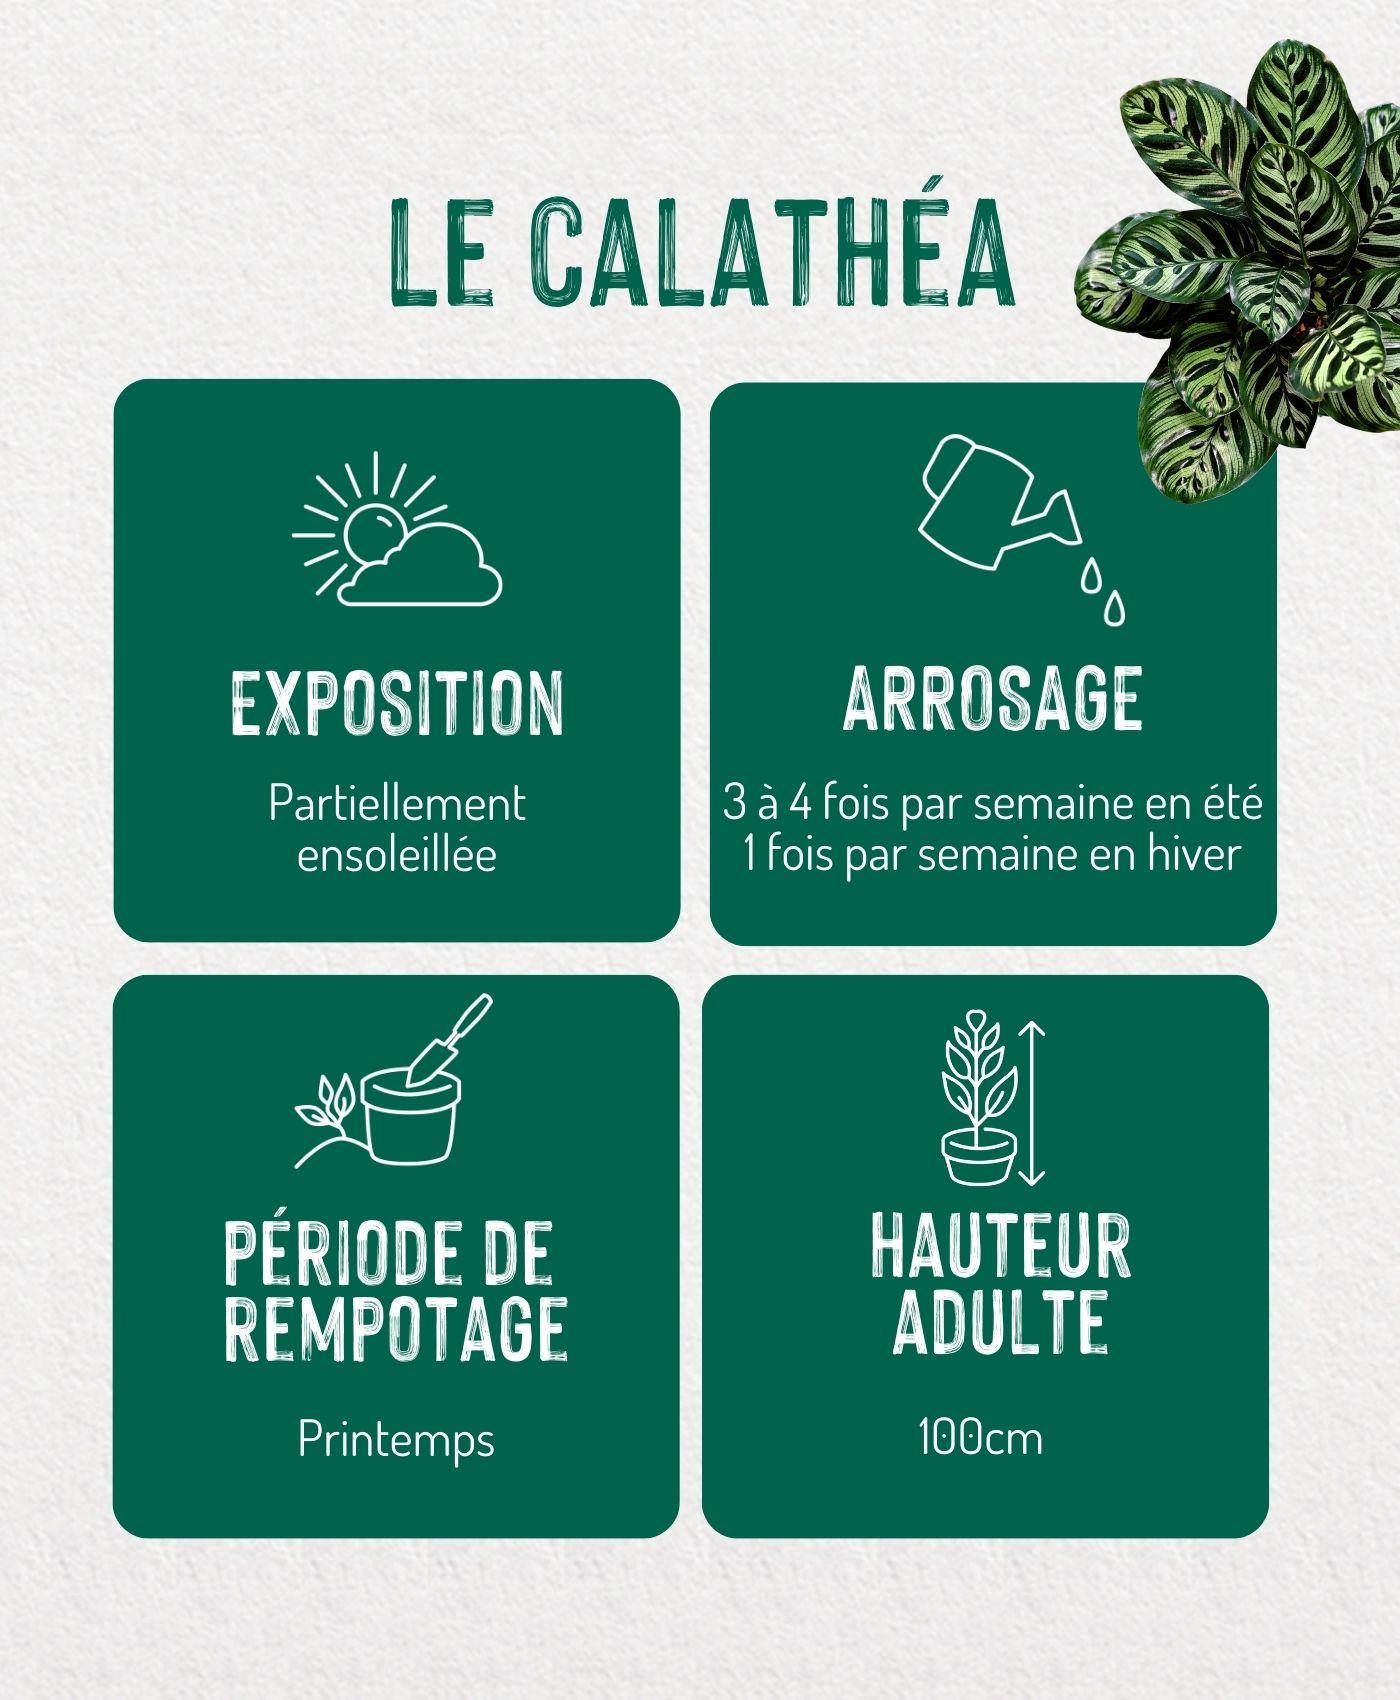 Une infographie sur le calathea